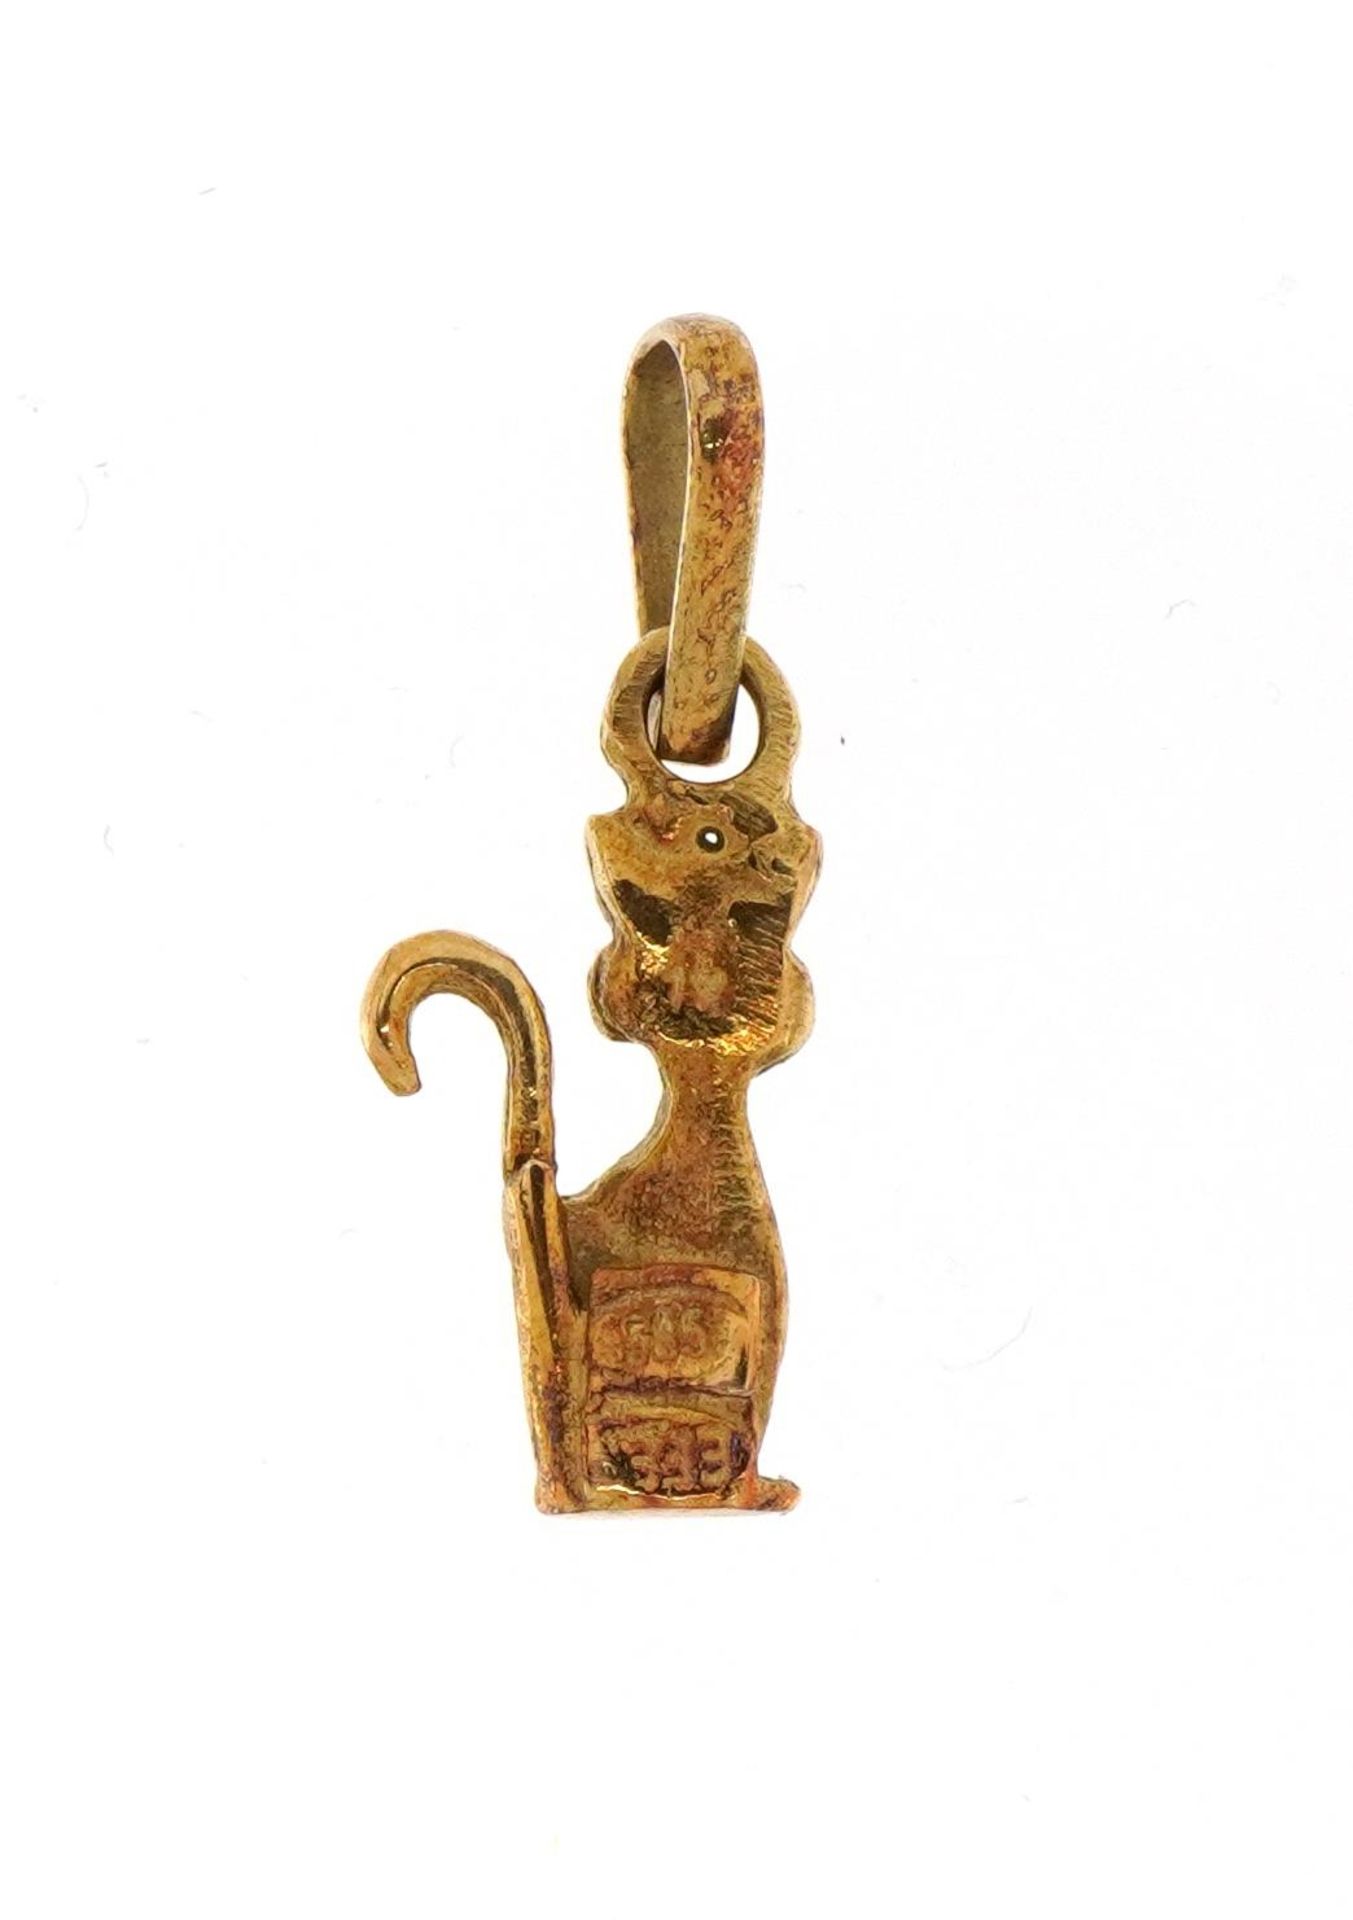 14ct gold cat pendant, 2.2cm high, 1.3g - Bild 2 aus 3